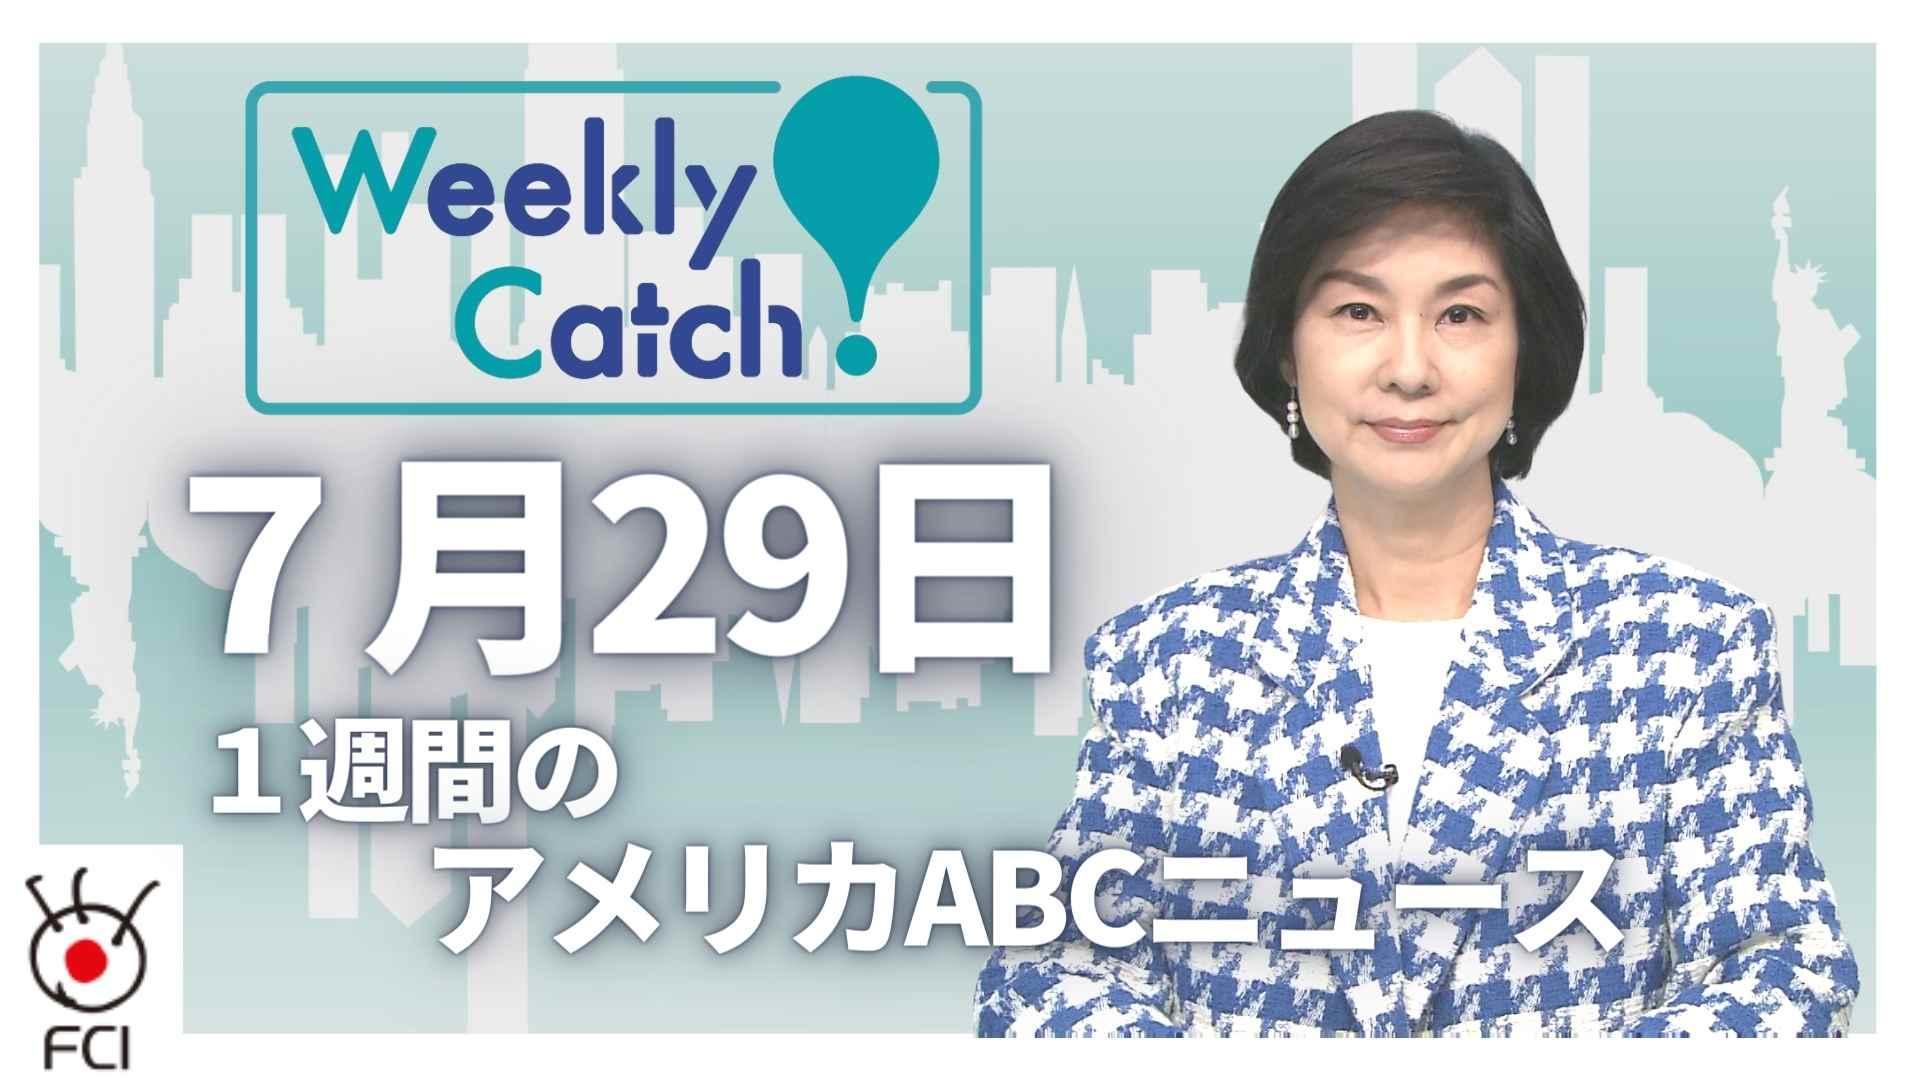 7月29 Weekly Catch!